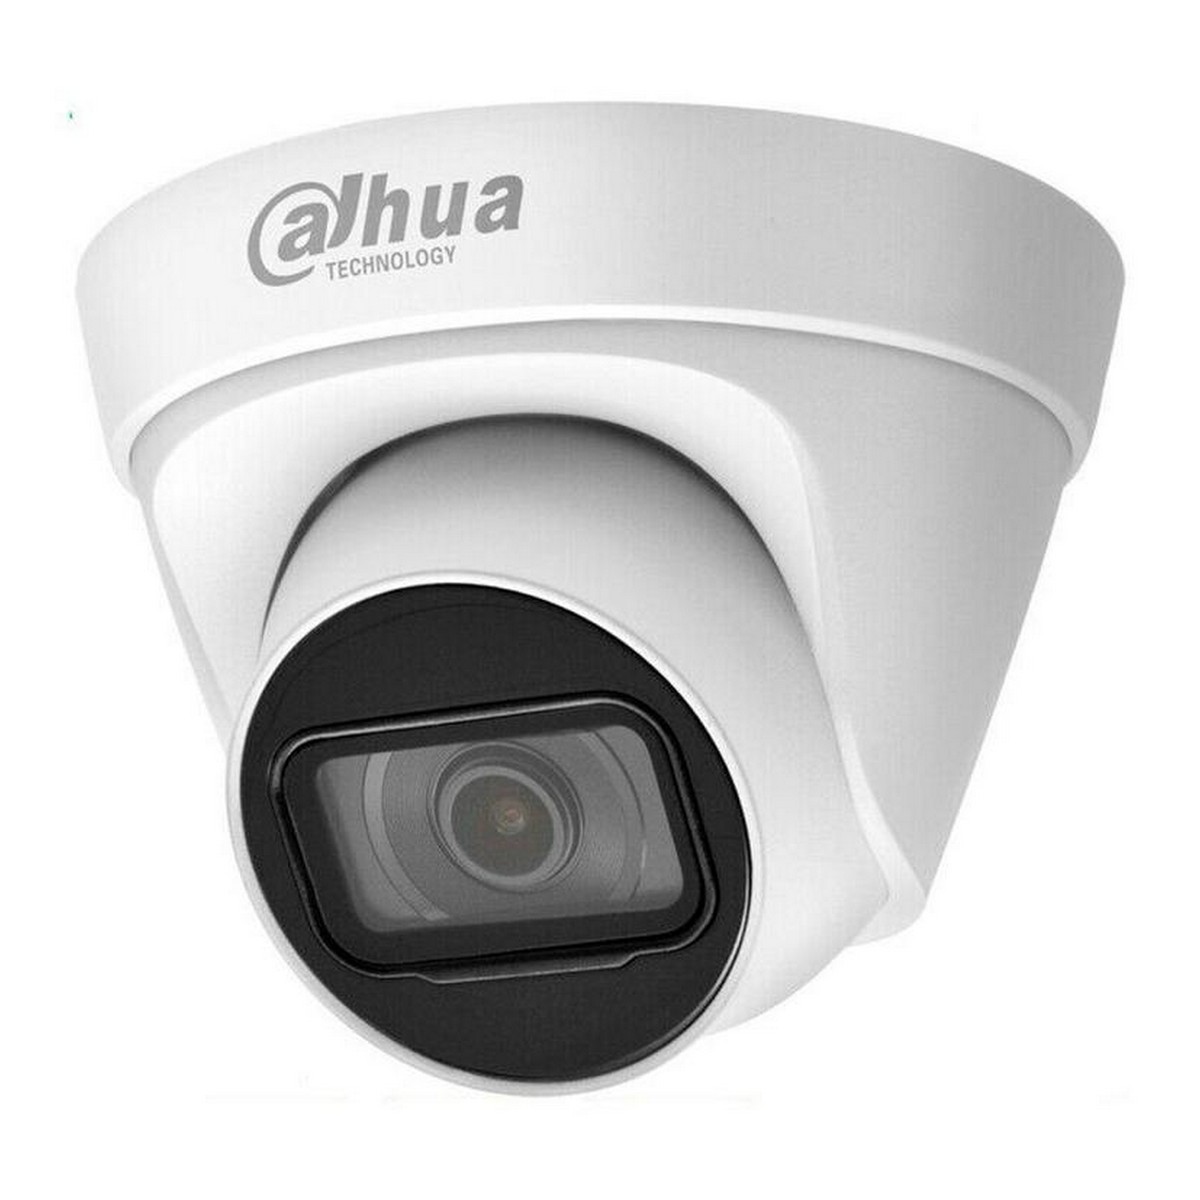 Dahua камеры купить. Камера видеонаблюдения Dahua DH-IPC-hdw1431t1-s4. Dahua - IPC-hdw1230t1p ( 2.8mm ). DH-IPC HDW 1431 t1. DH-IPC-hdw1230t1-s5.